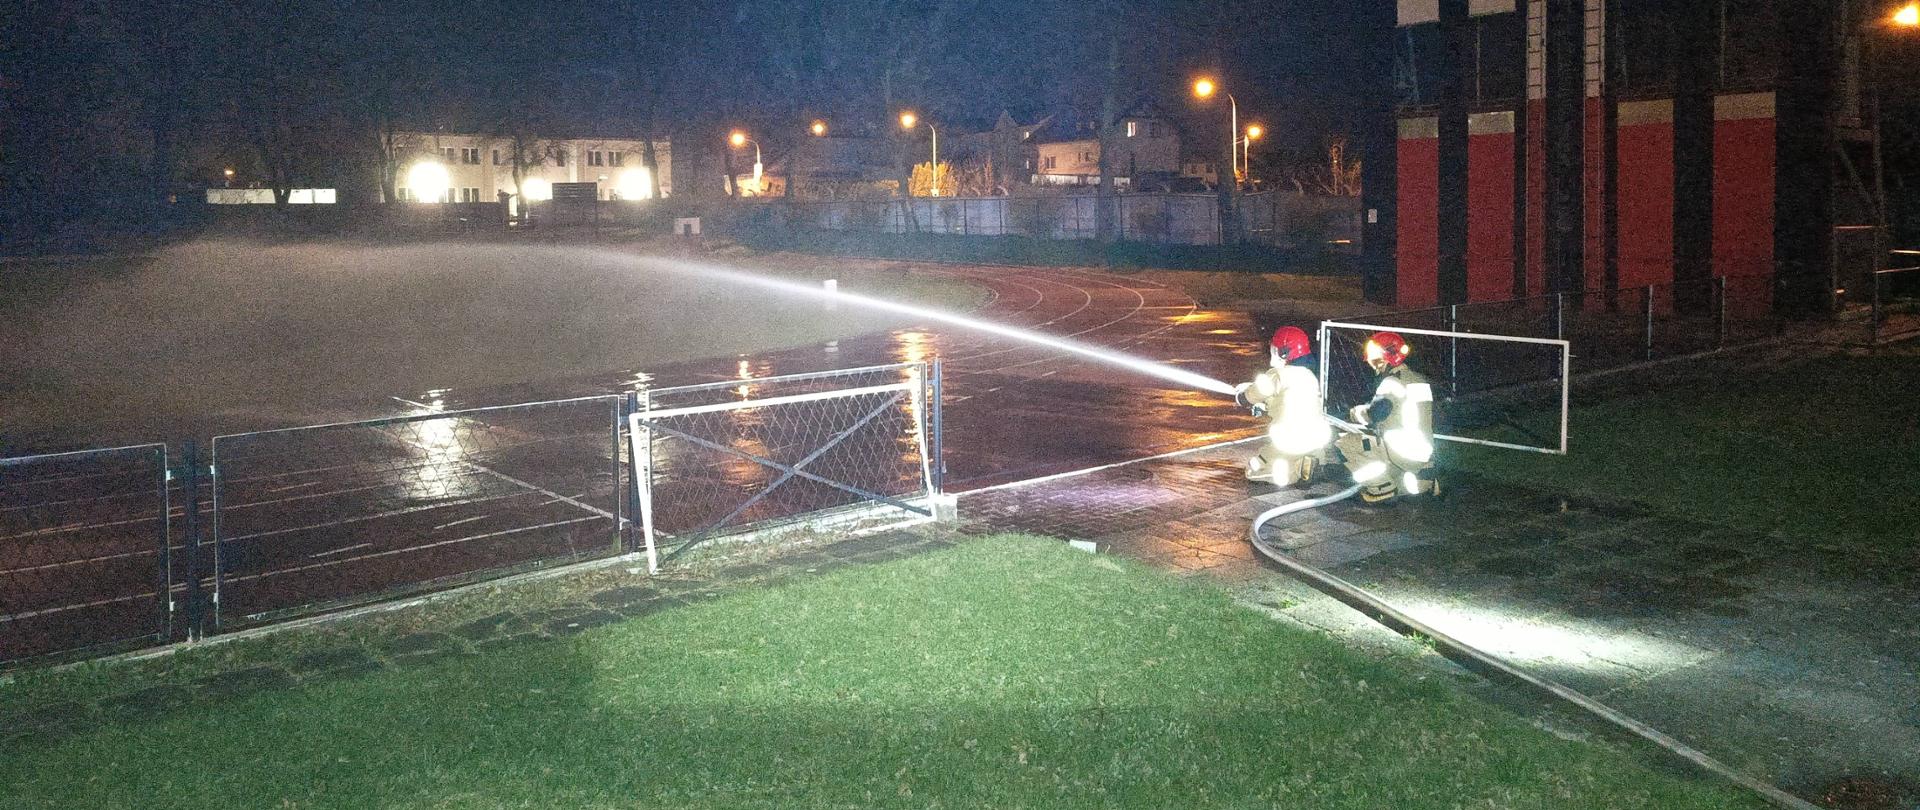 Nocne ćwiczenia, rota strażaków kieruje strumień wody na teren boiska, w głębi po prawej widoczna wspinalnia